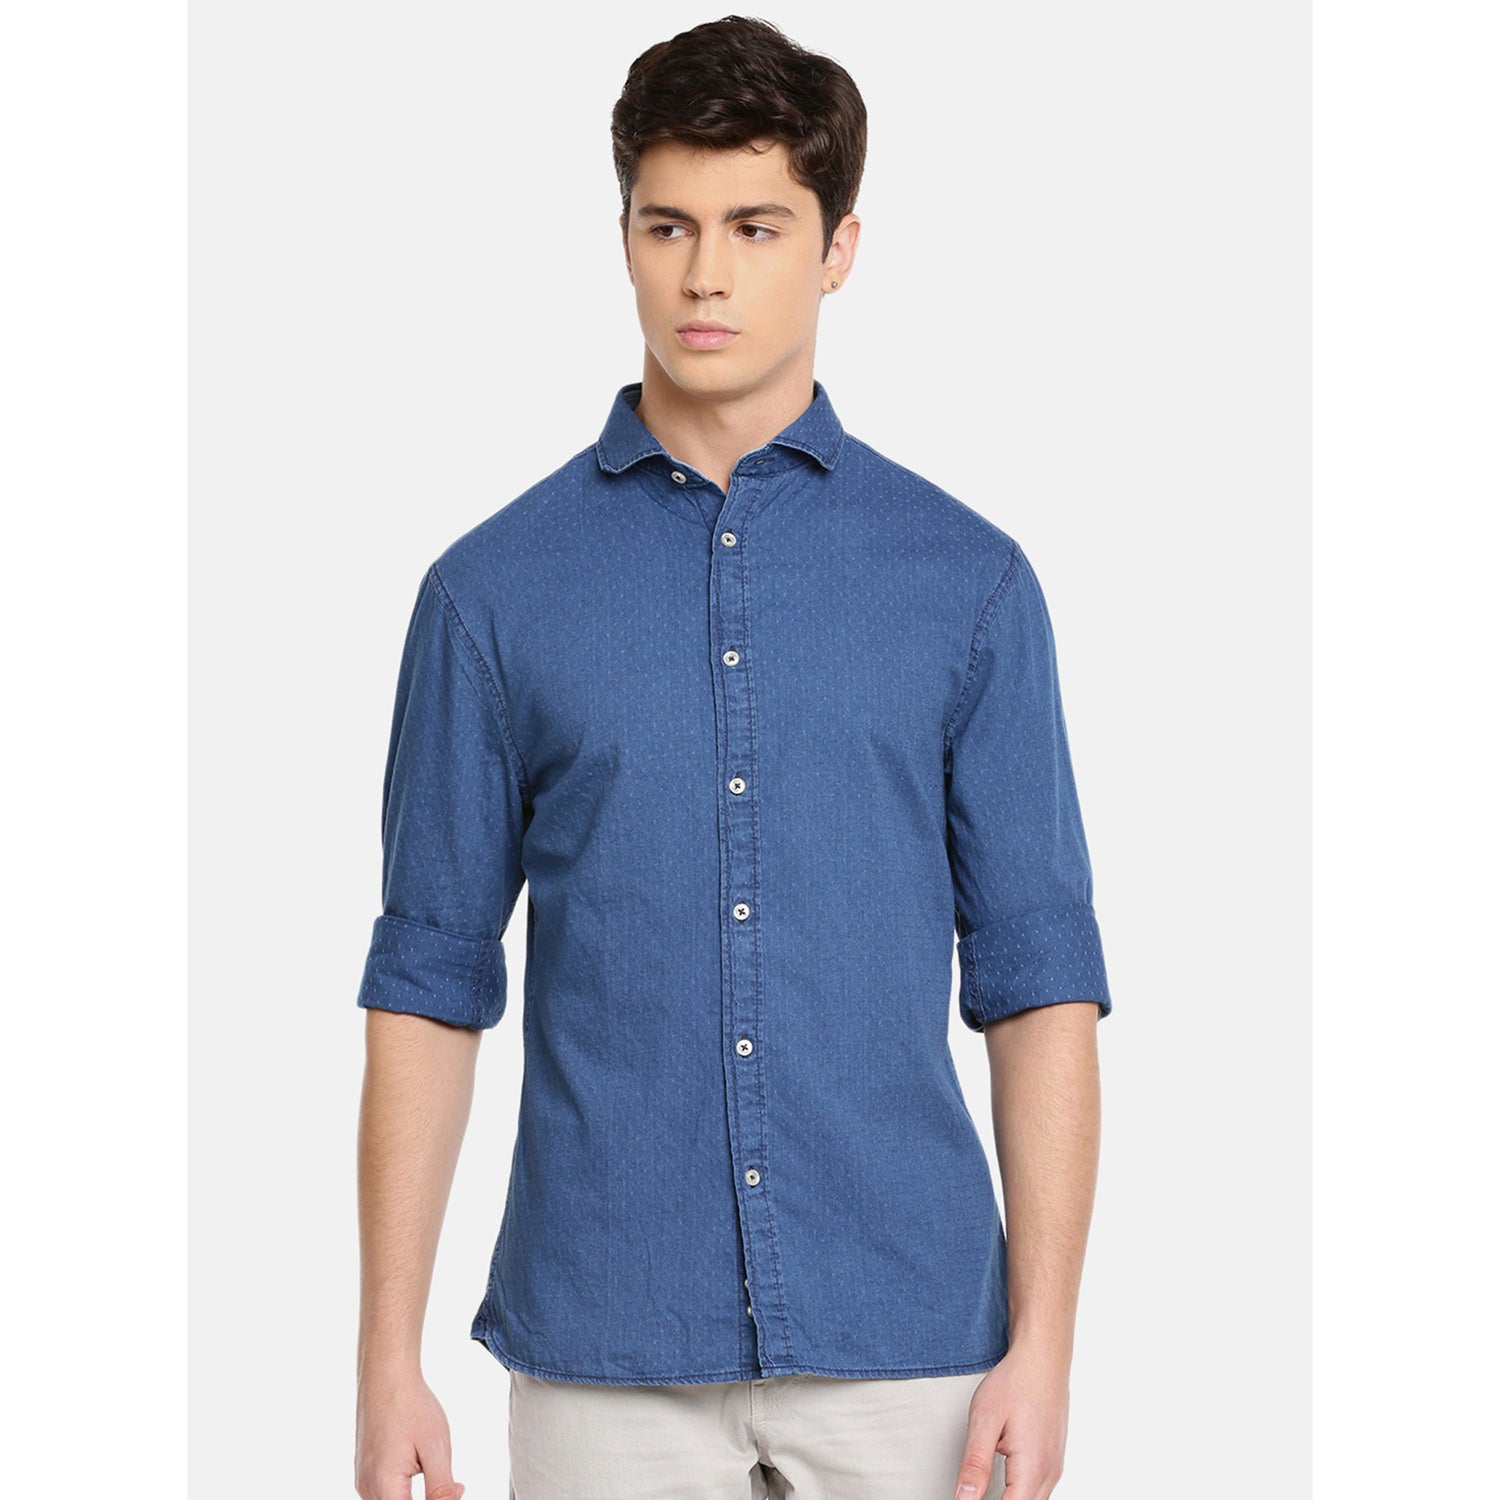 Blue Slim Fit Printed Casual Shirt (PACITYDOB)